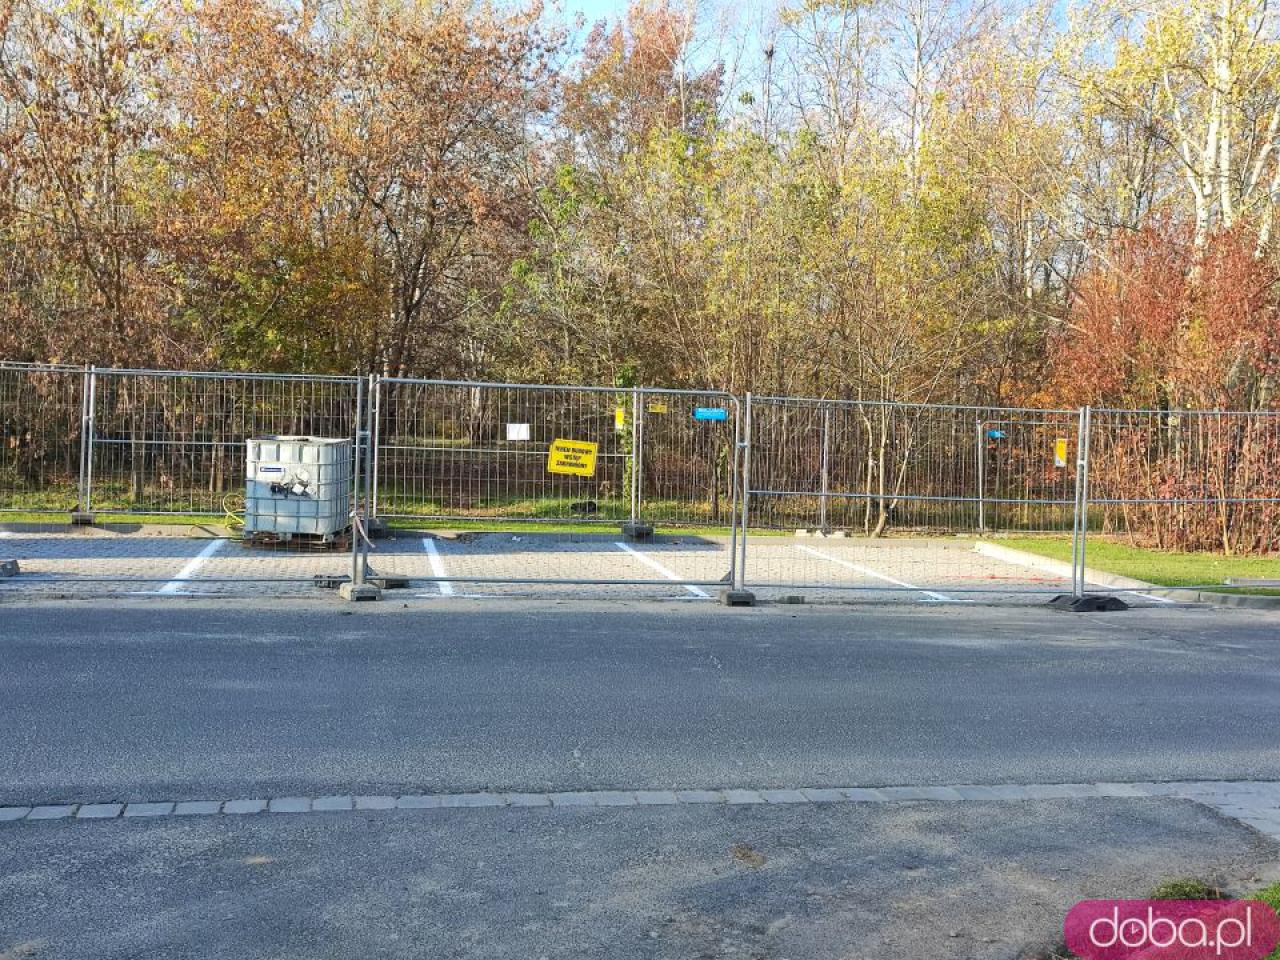 50 nowych miejsc postojowych na Gądowie. Kończy się budowa parkingu przy ul. Idzikowskiego [Foto]